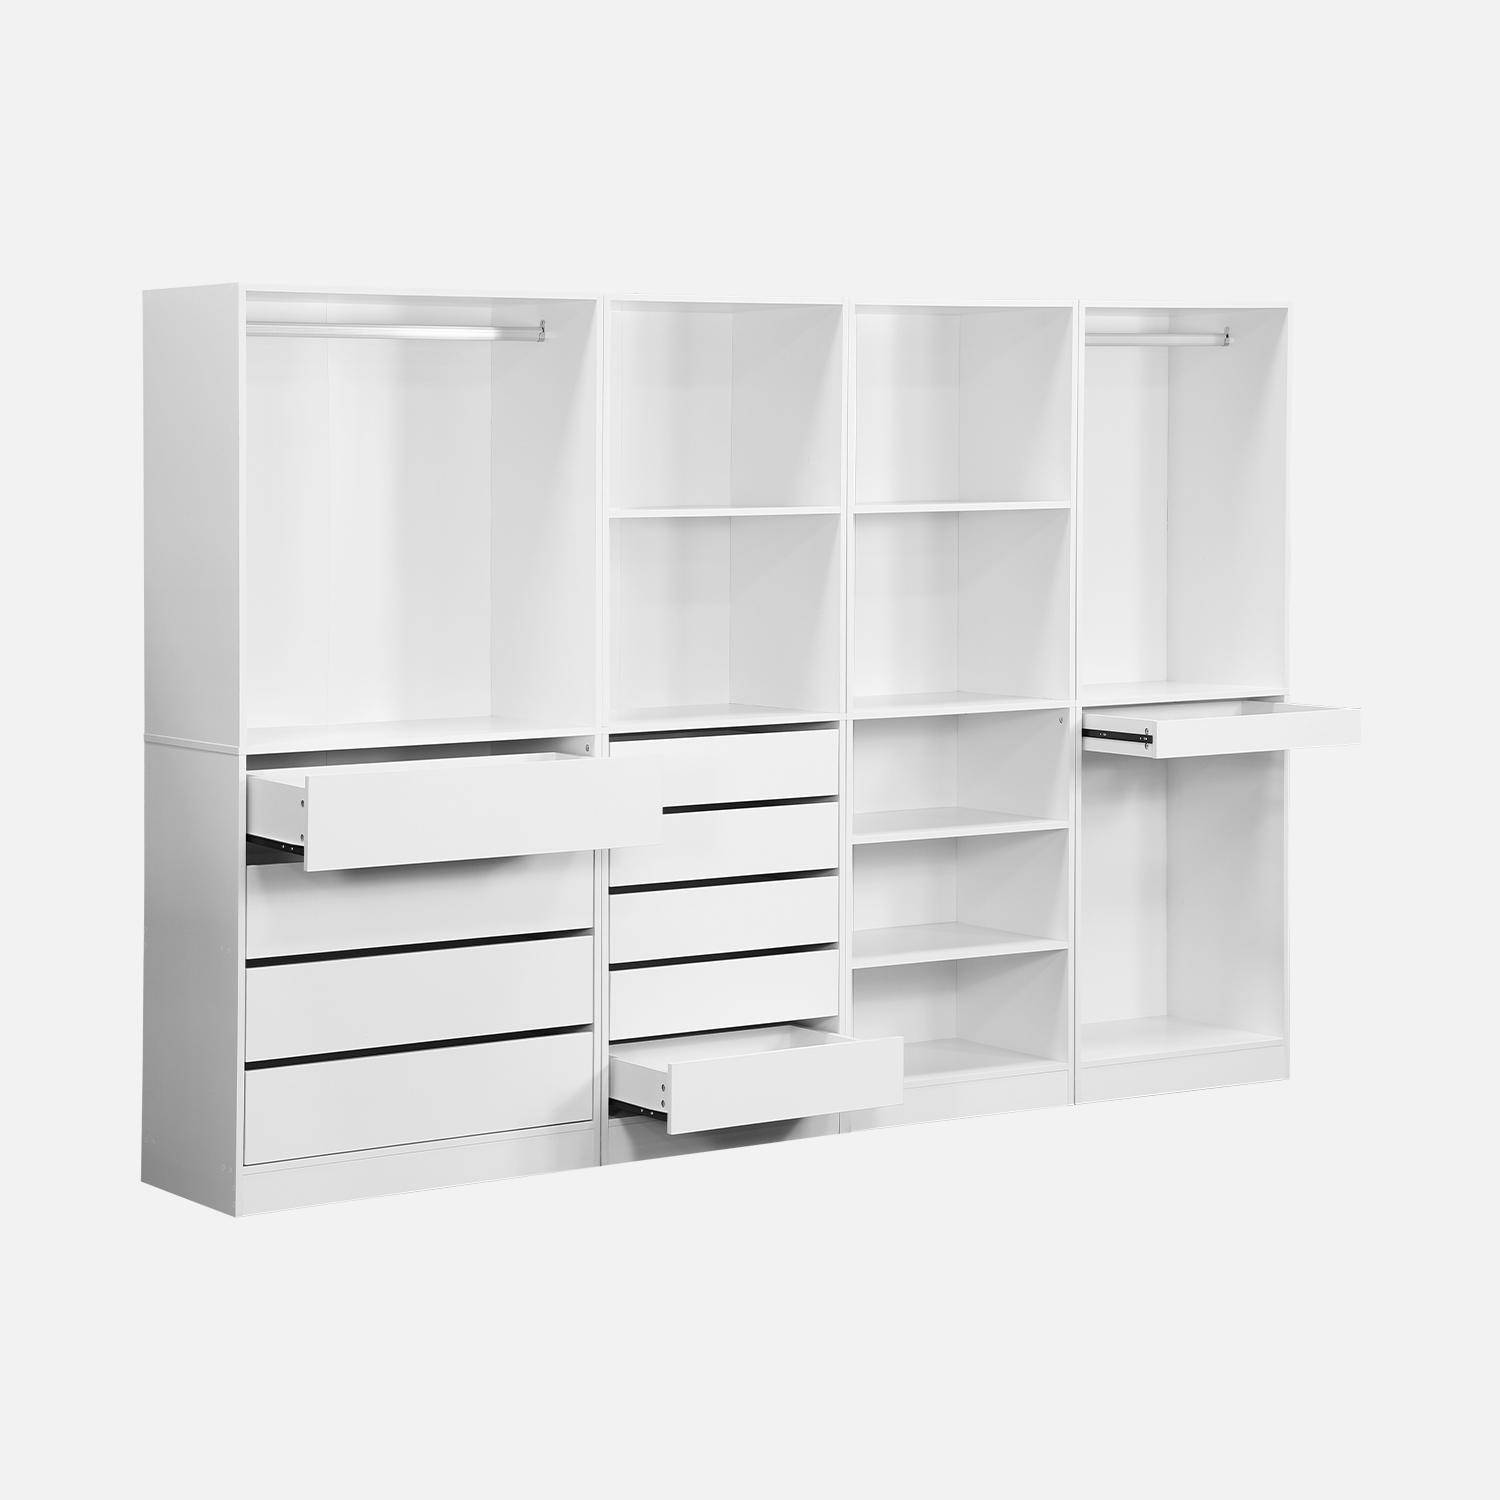 Modular wardrobe set with 4 units, white, laminate panels,sweeek,Photo5